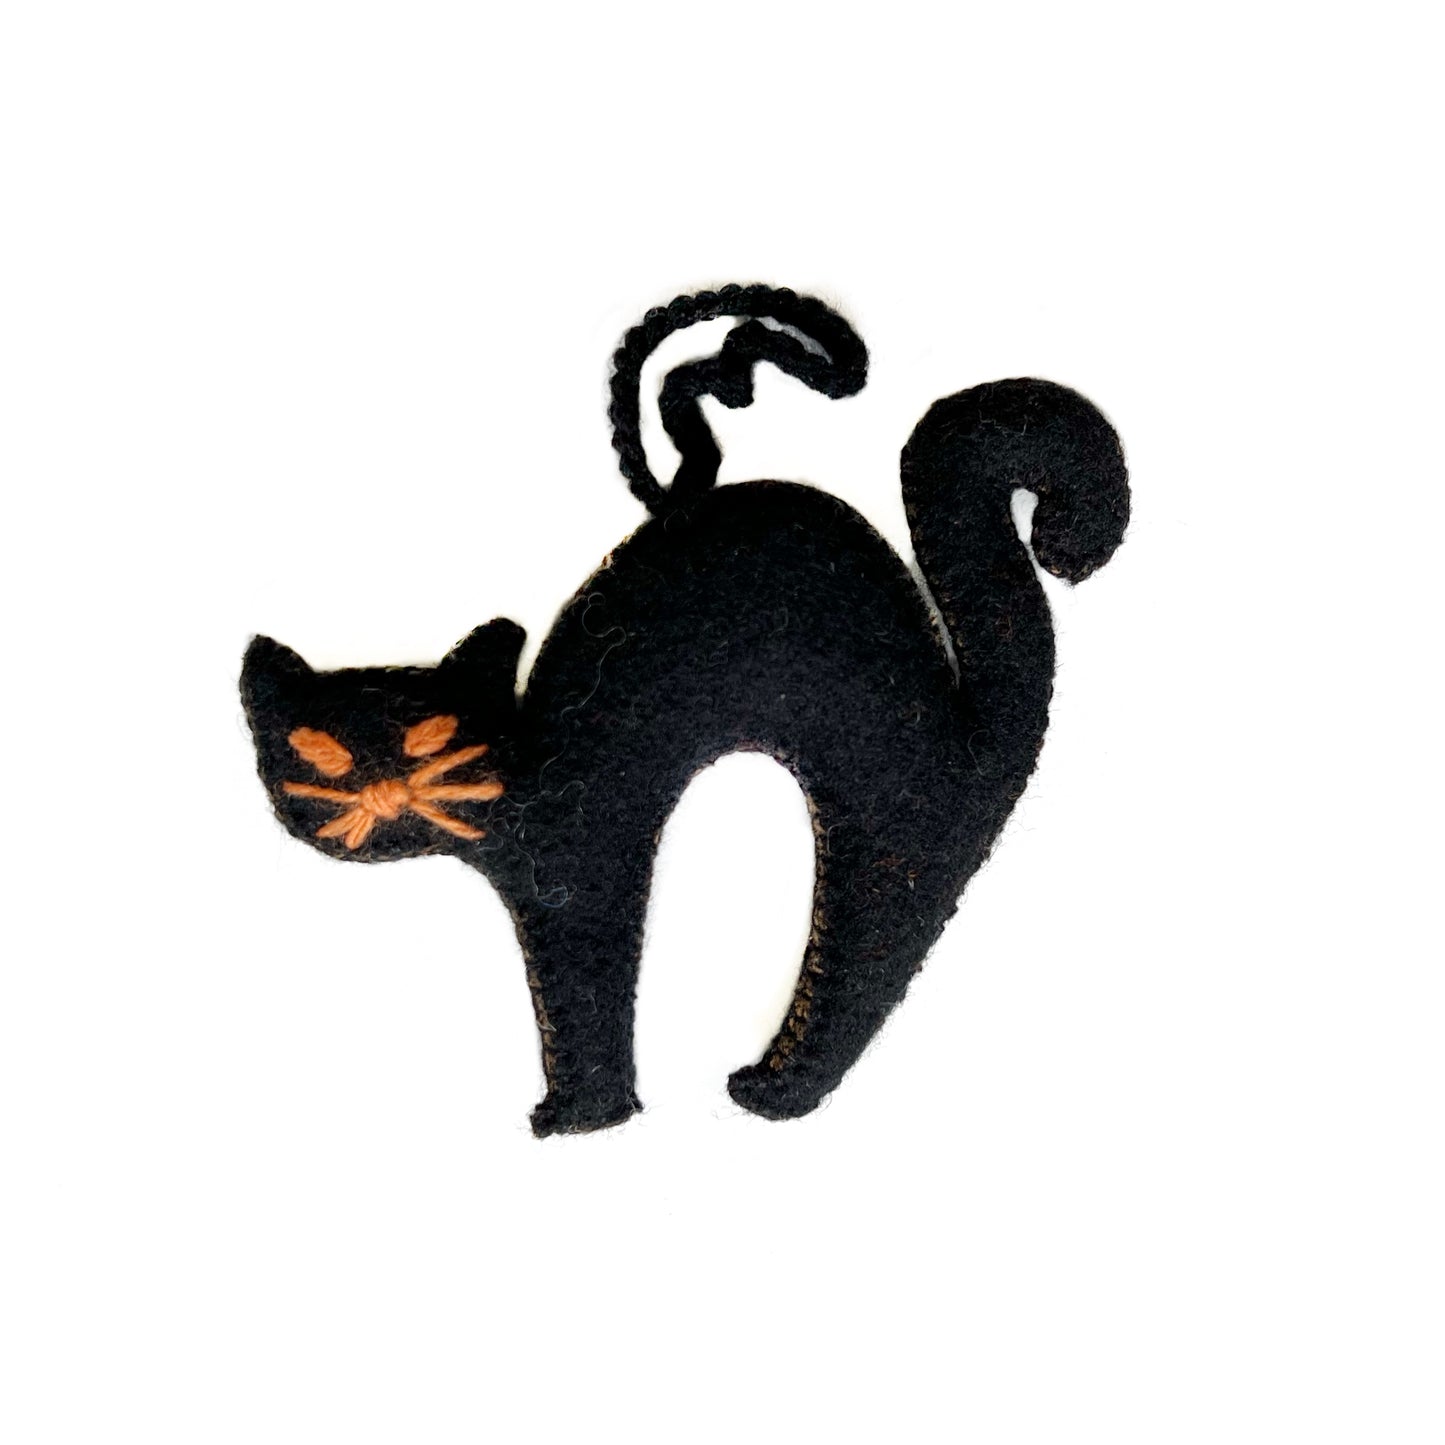 Klassisches Halloween-Ornament: Schwarze Katze